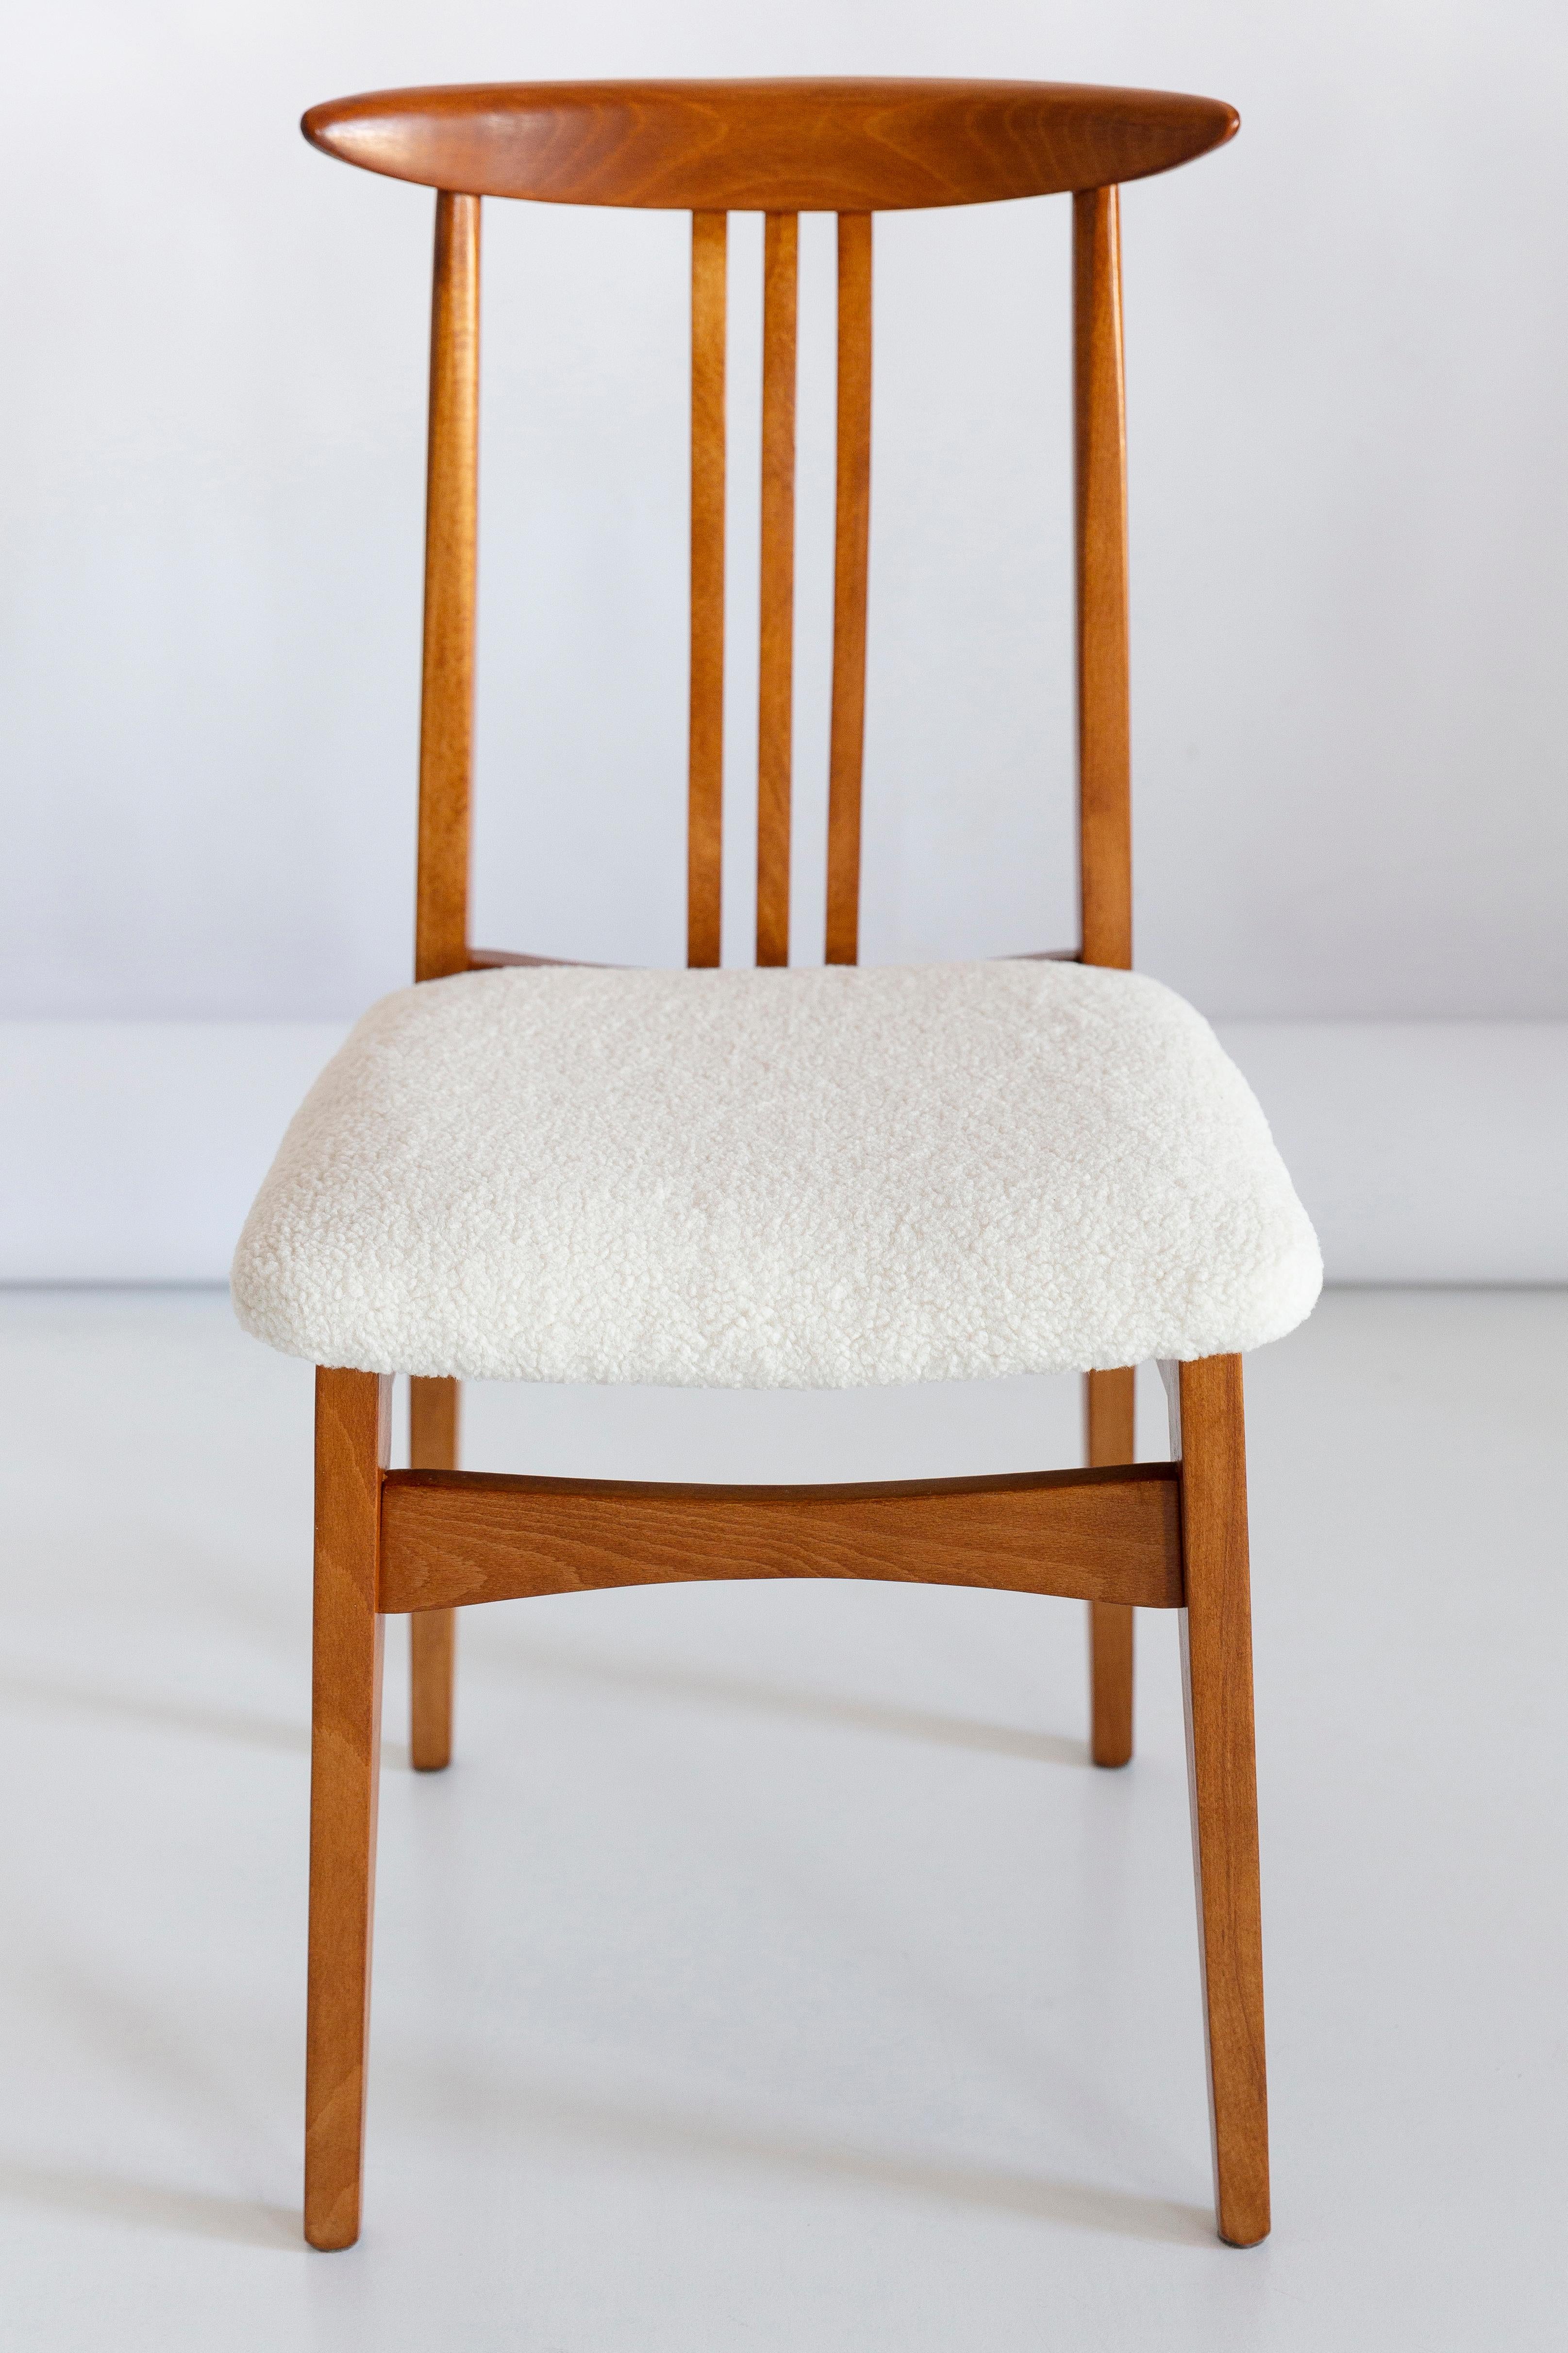 Ein schöner Buchenstuhl, entworfen von M. Zielinski, Typ 200 / 100B. Hergestellt vom Opole Furniture Industry Center Ende der 1960er Jahre in Polen. Der Stuhl ist nach einer kompletten Tischler- und Polstermöbelrenovierung. Die Sitze sind mit